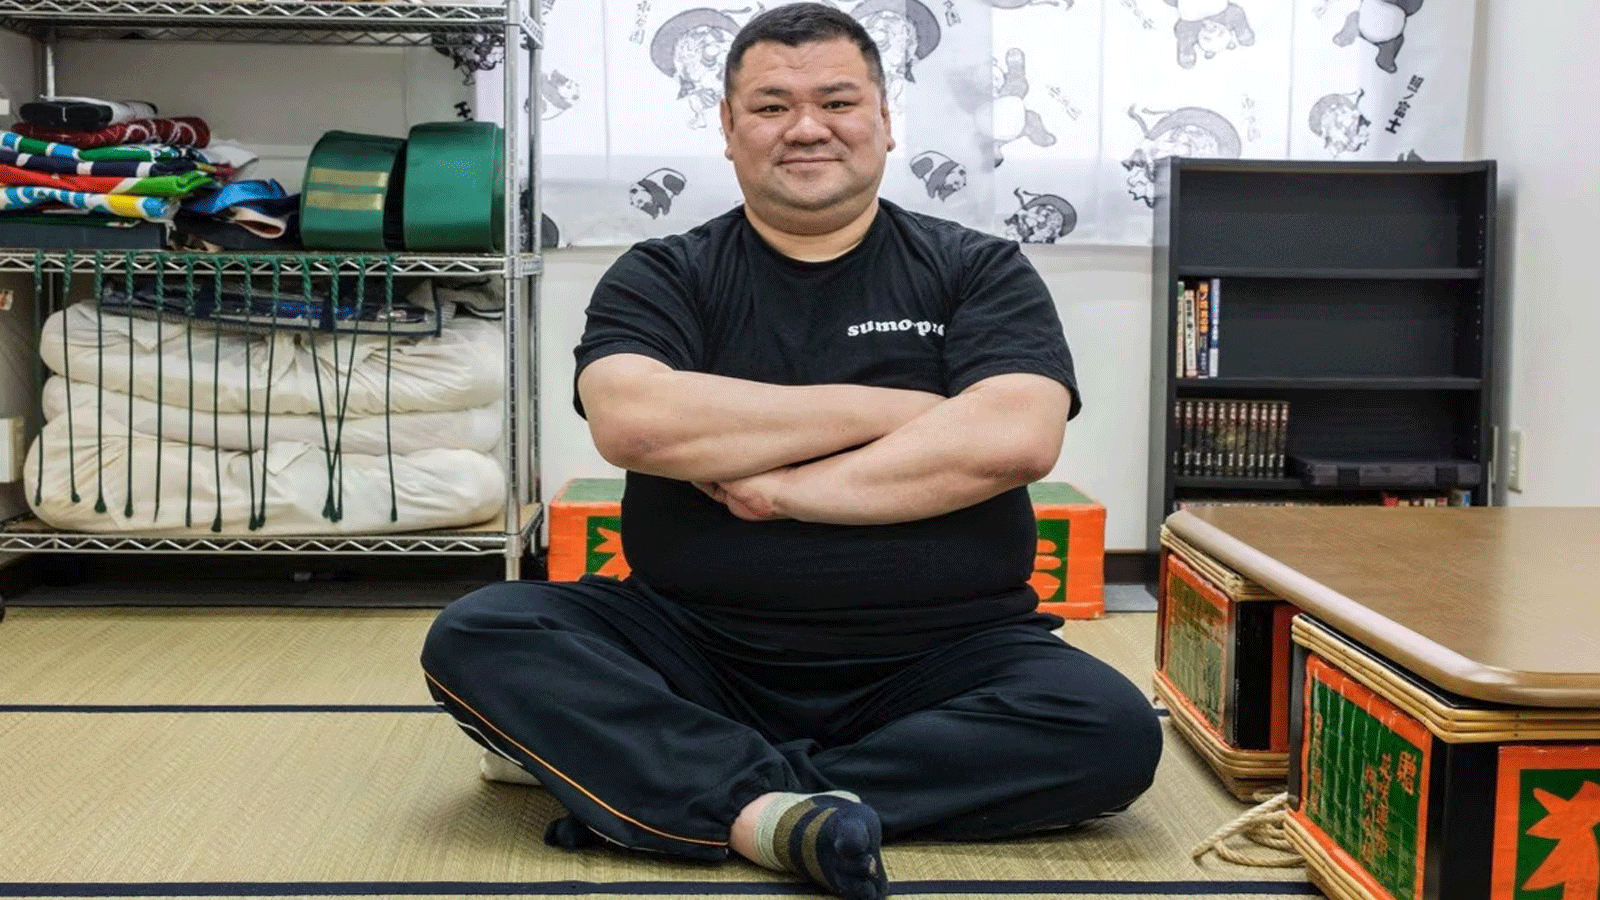 كيسوكي كاميكاوا هو مصارع سومو متقاعد وصاحب مركز هاناساكي للرعاية النهارية، يقول إن الحياة بعد السومو يمكن أن تكون صعبة على المصارعين المتقاعدين